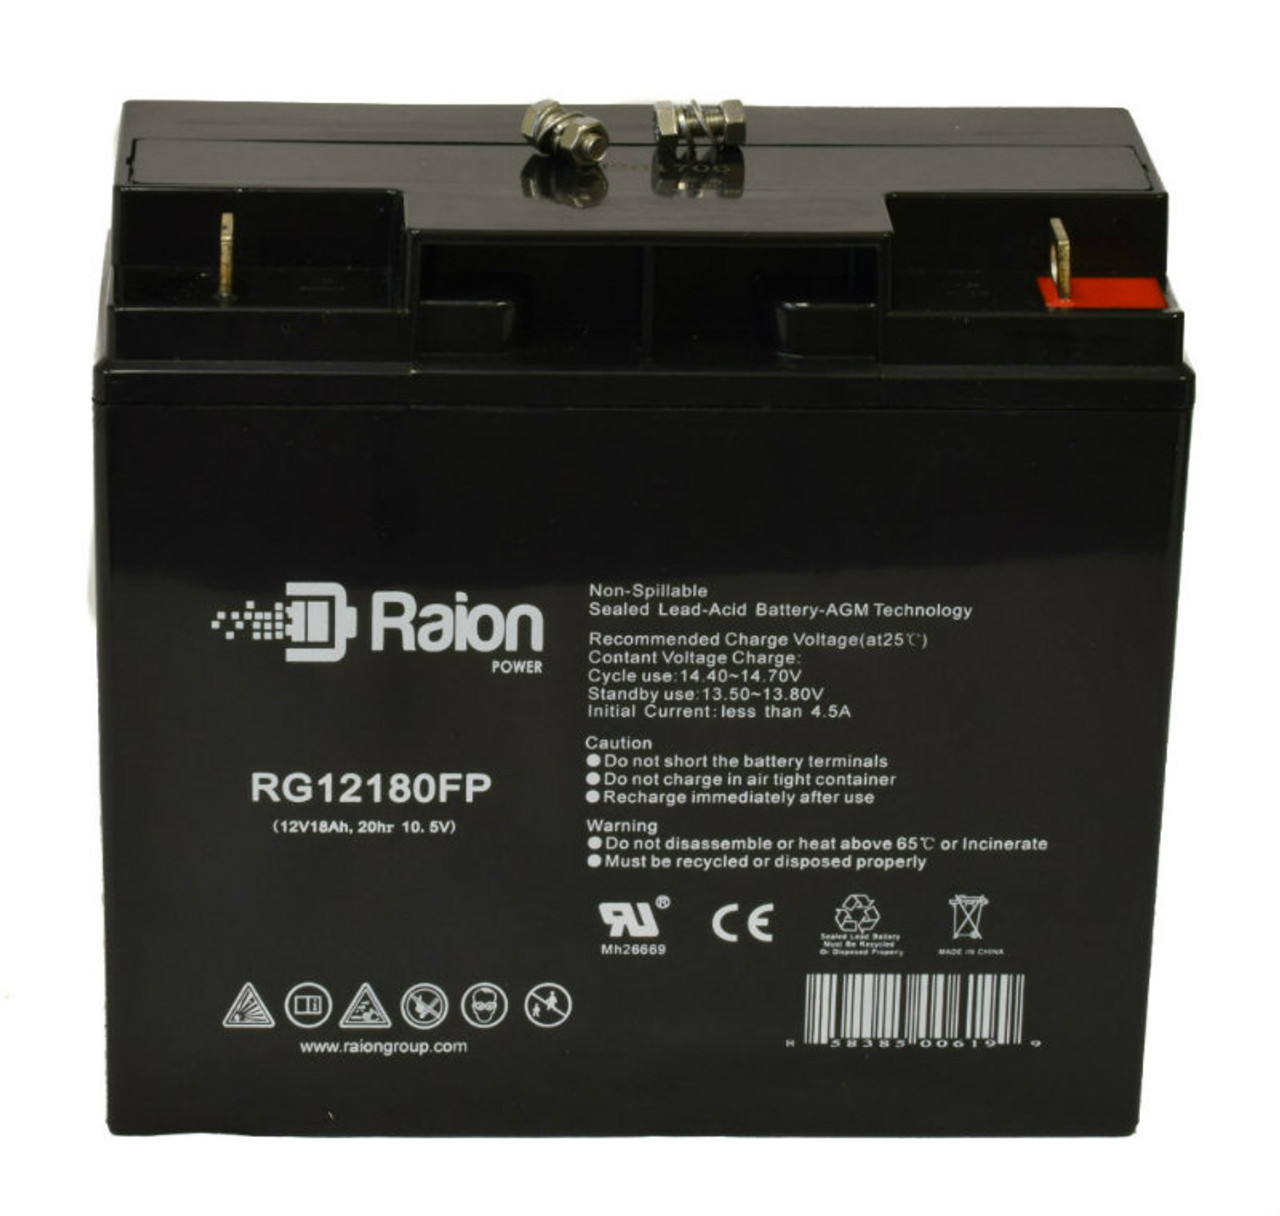 Raion Power RG12180FP 12V 18Ah Lead Acid Battery for IBT BT20-12